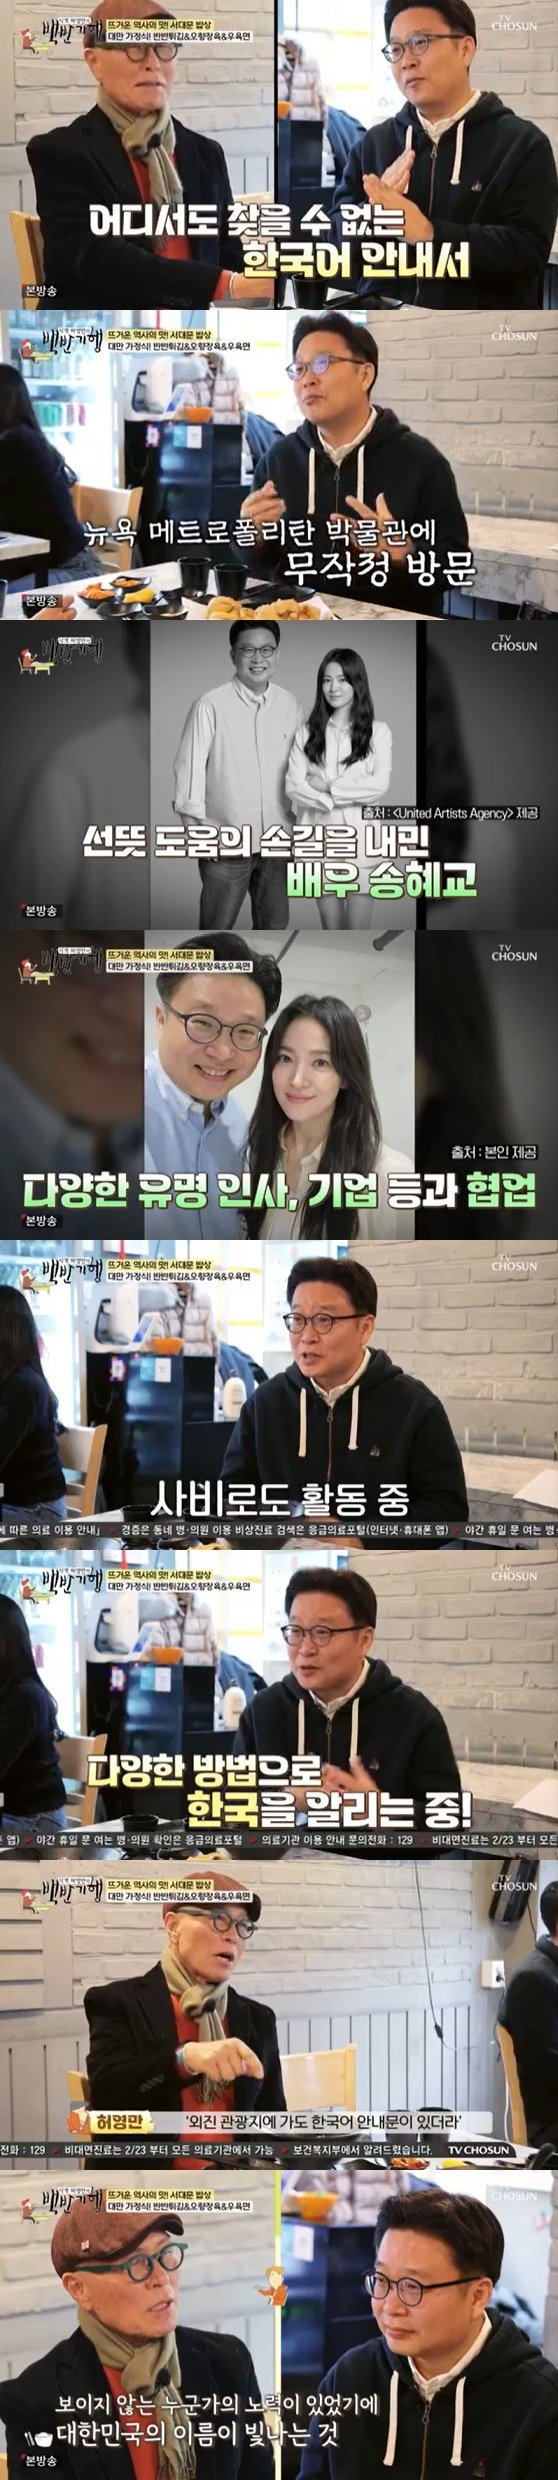 '한국 알림이' 서경덕 교수, 송혜교와 13년 인연 공개 [RE:TV]